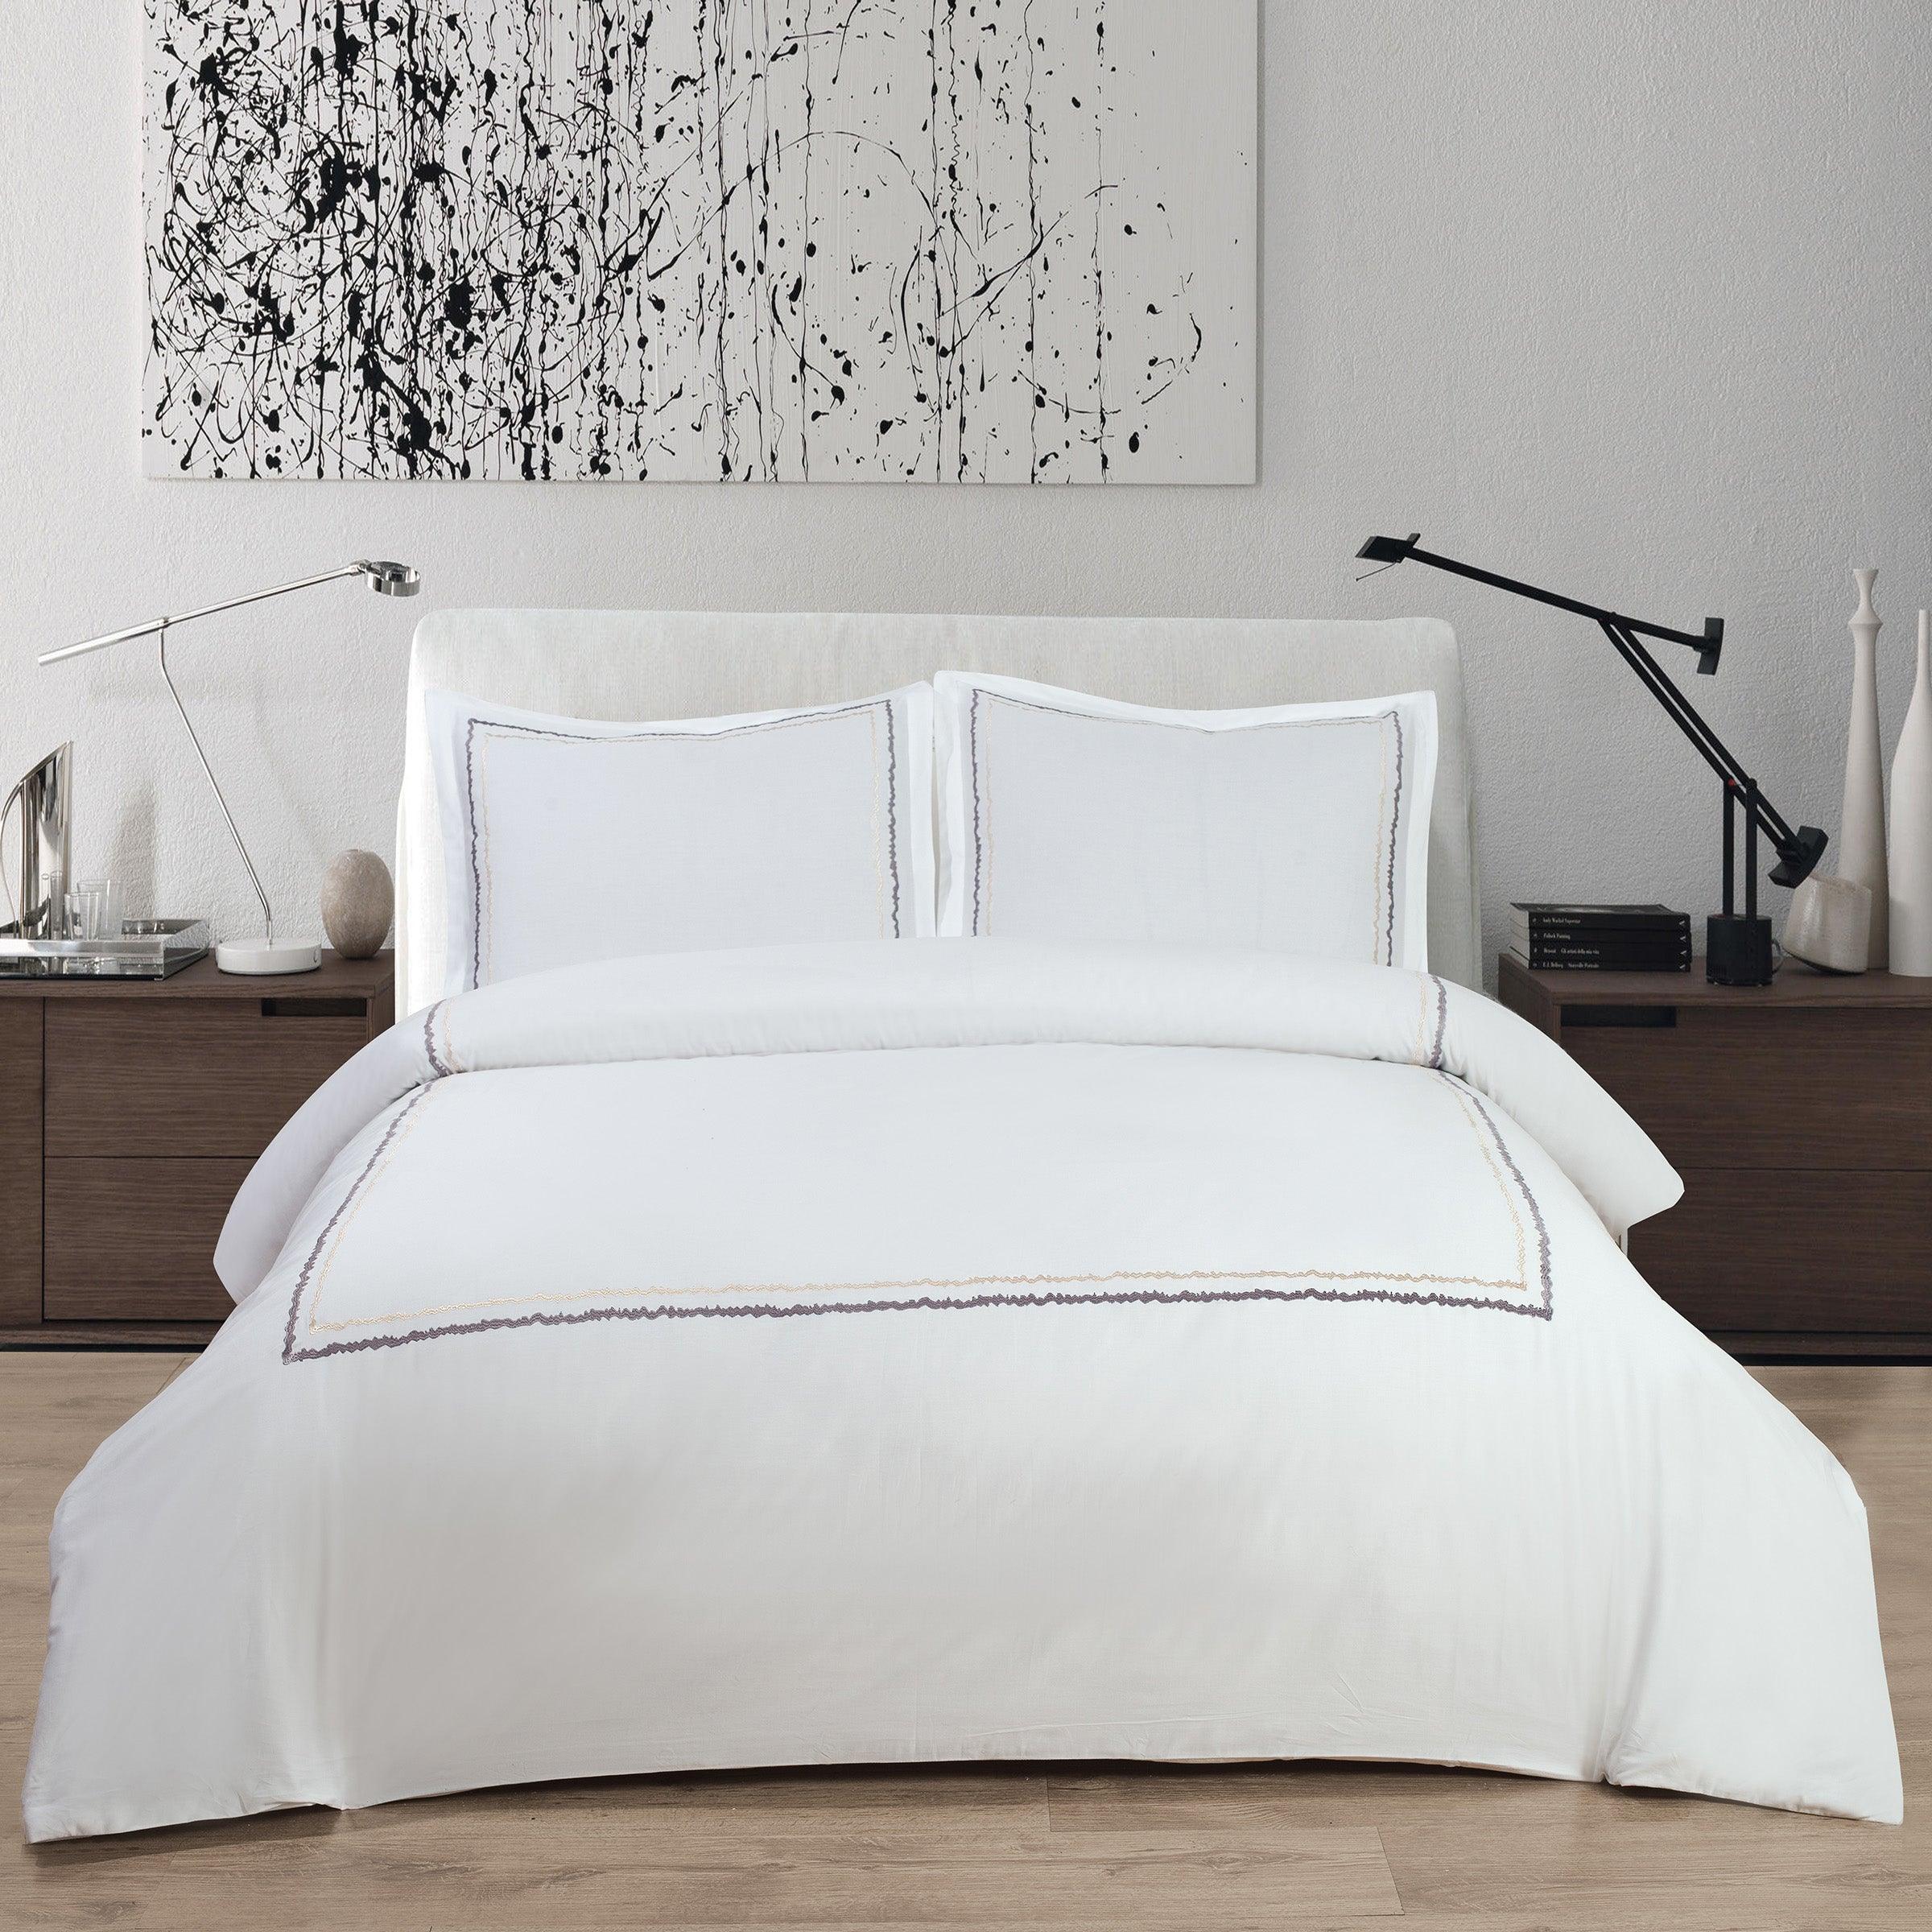 http://elegantlinen.com/cdn/shop/products/bellagio-4-piece-bedding-set-elegant-linen.jpg?v=1700171944